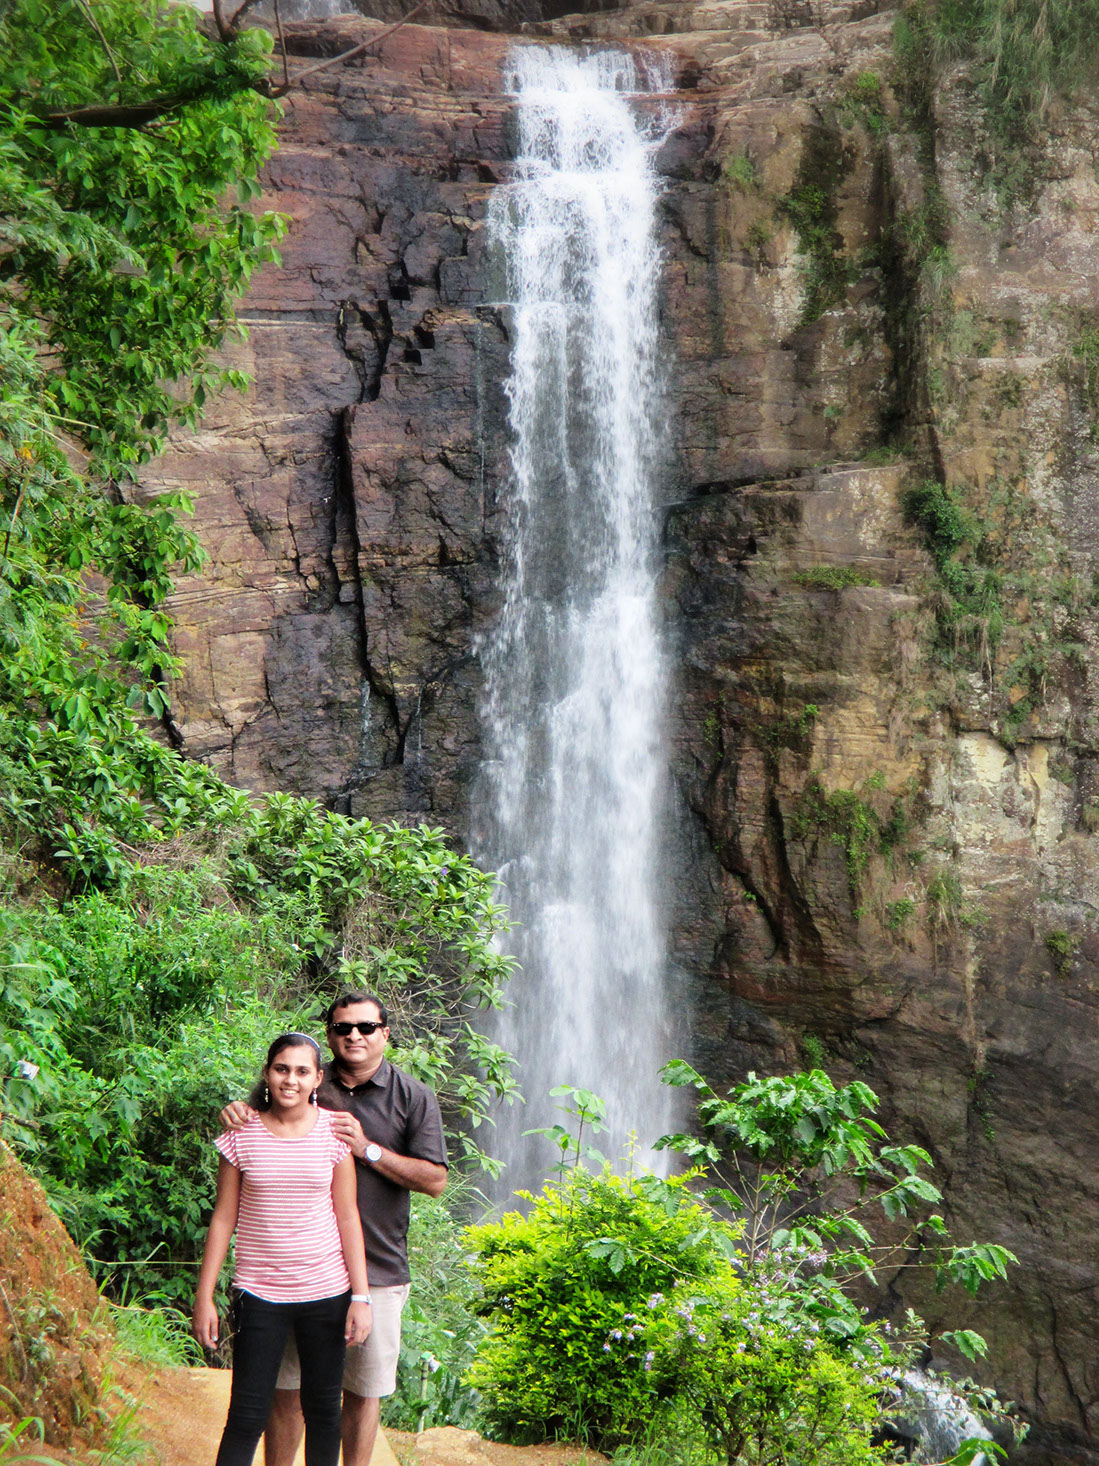 The majestic Ramboda Falls in Sri Lanka